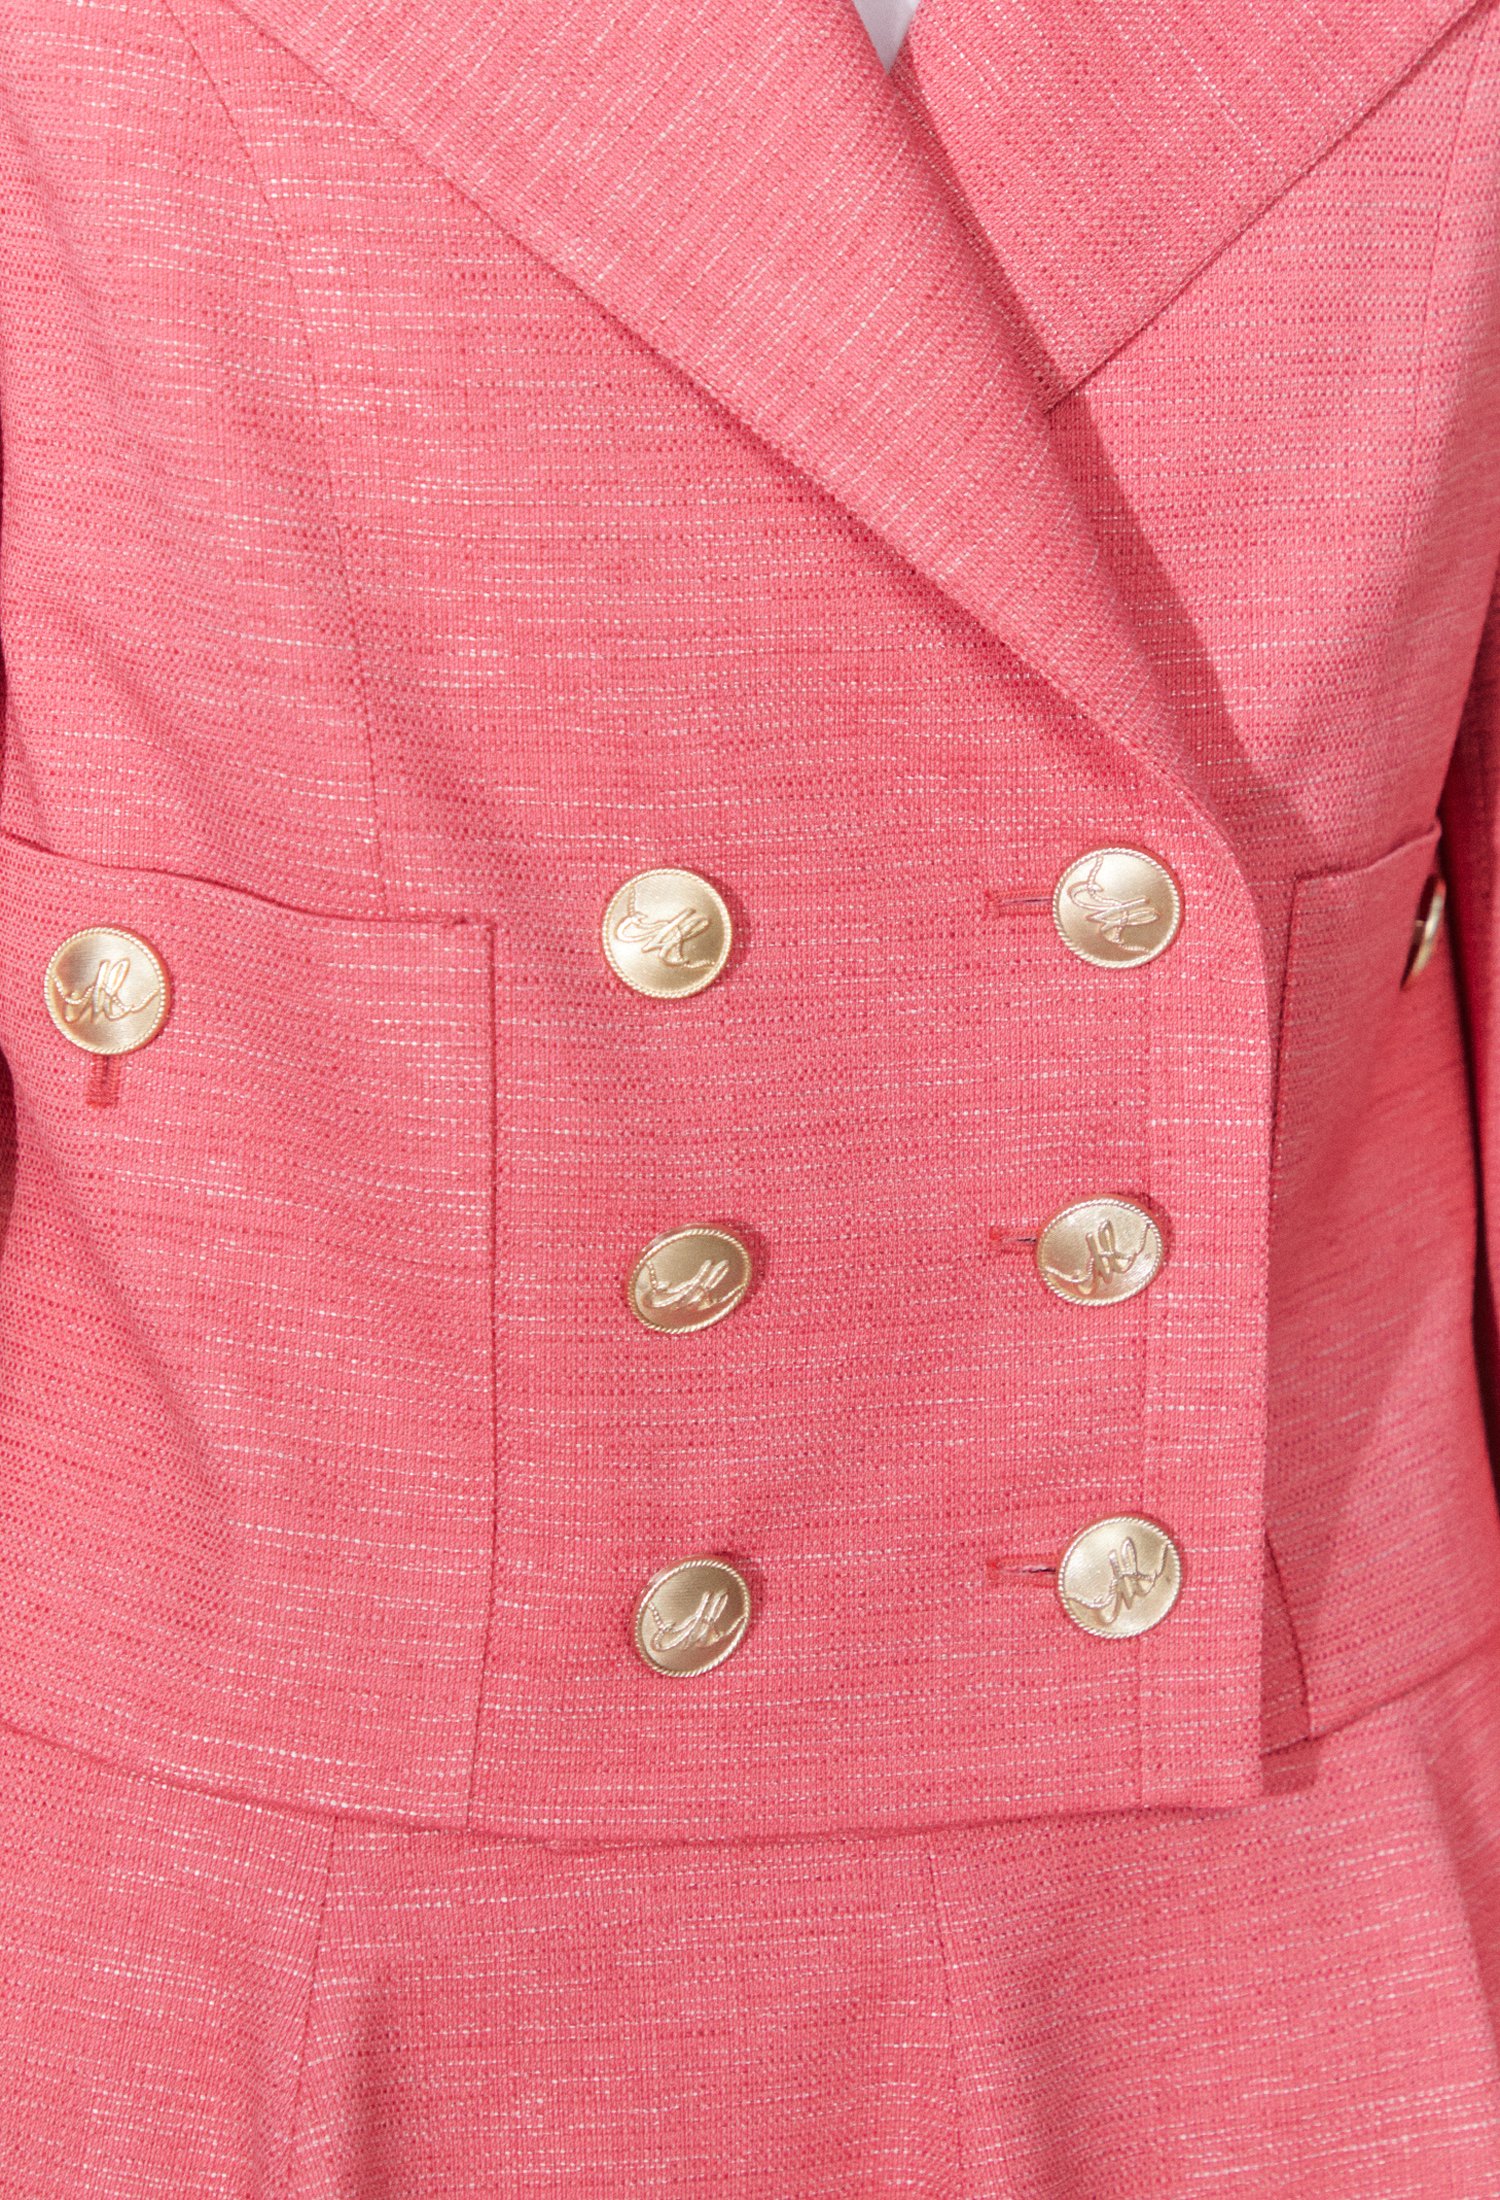 논칼라 사이드 버튼 트위드 재킷 (PINK)